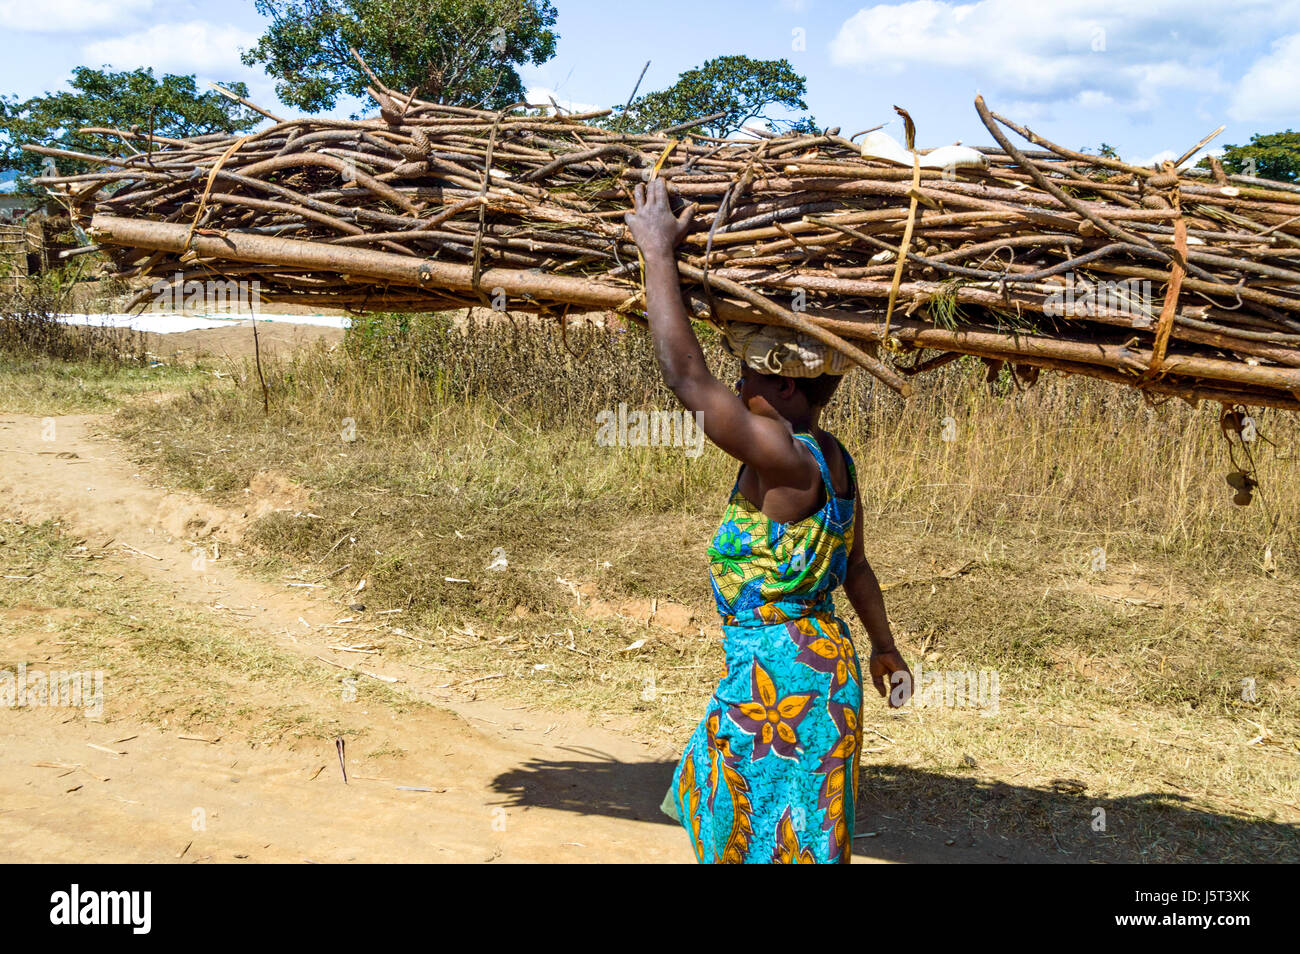 La donna che porta un pesante pacchetto di legna da ardere sul suo capo a camminare su una strada sterrata per un villaggio rurale in Malawi, Africa Foto Stock